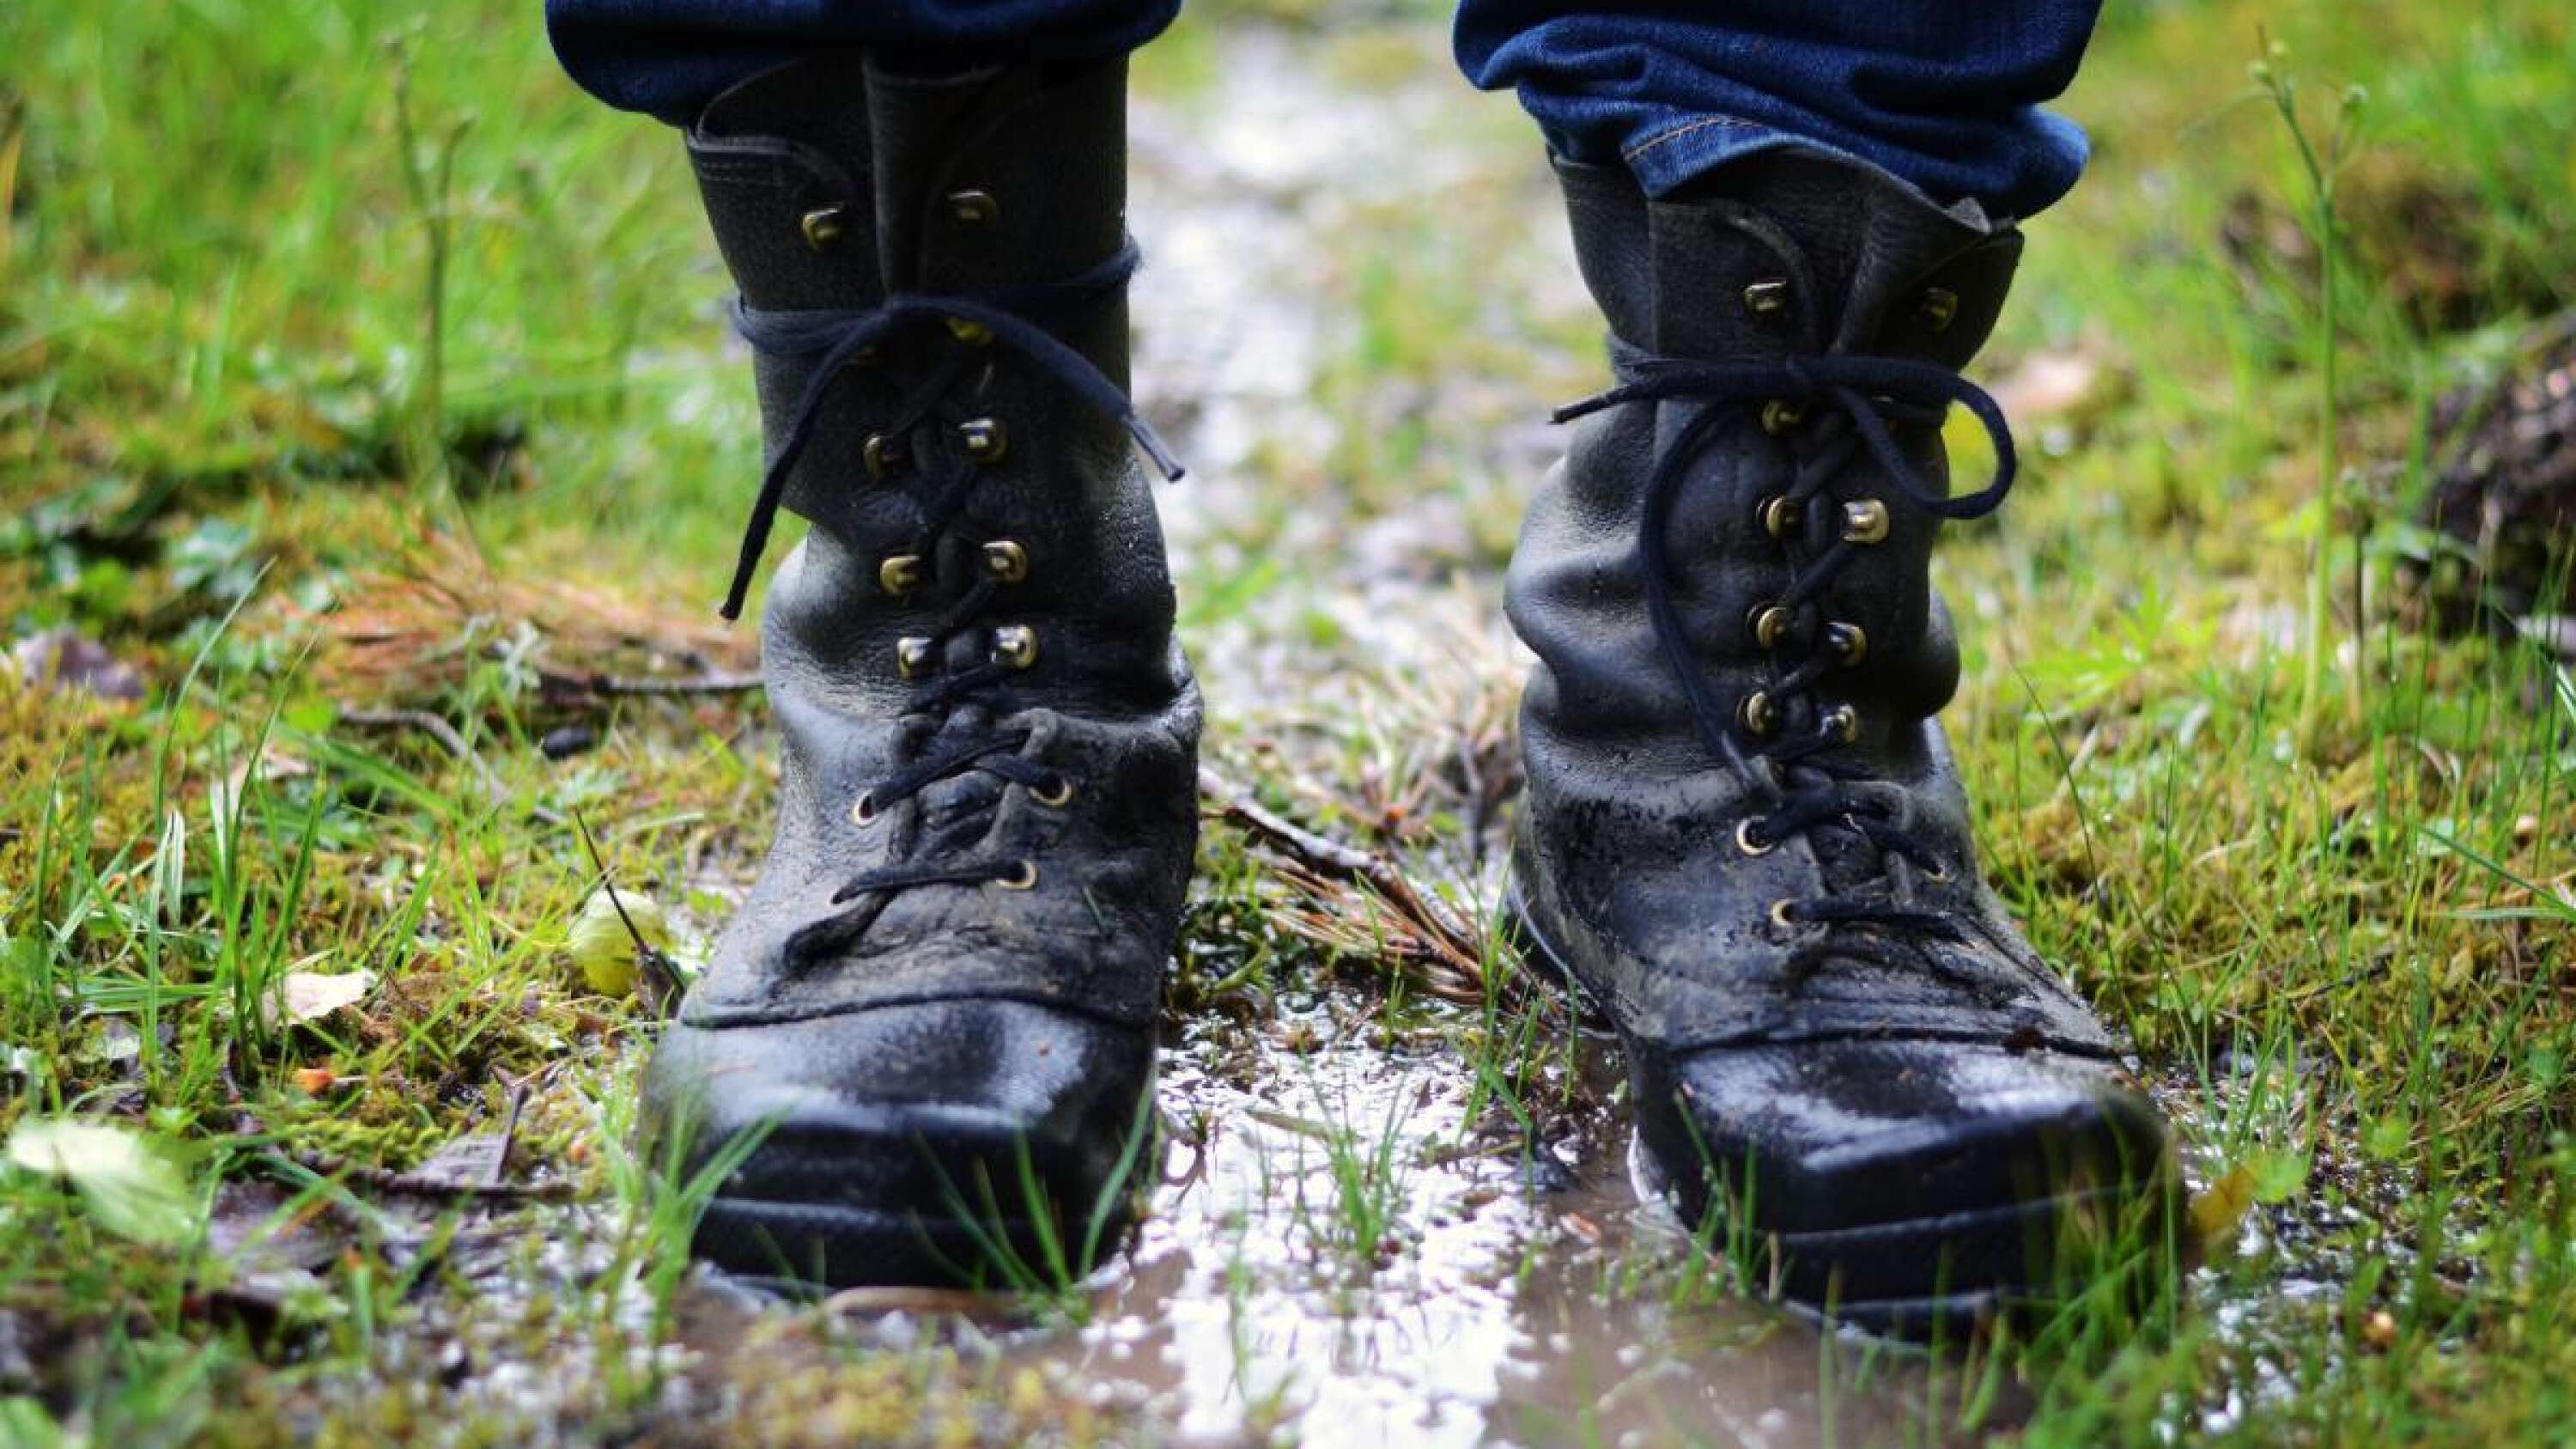 Efter en regntung vår och försommar är bra skor en viktig del av upplevelsen. Kalla och blöta fötter gör ingen glad, menar Åke.